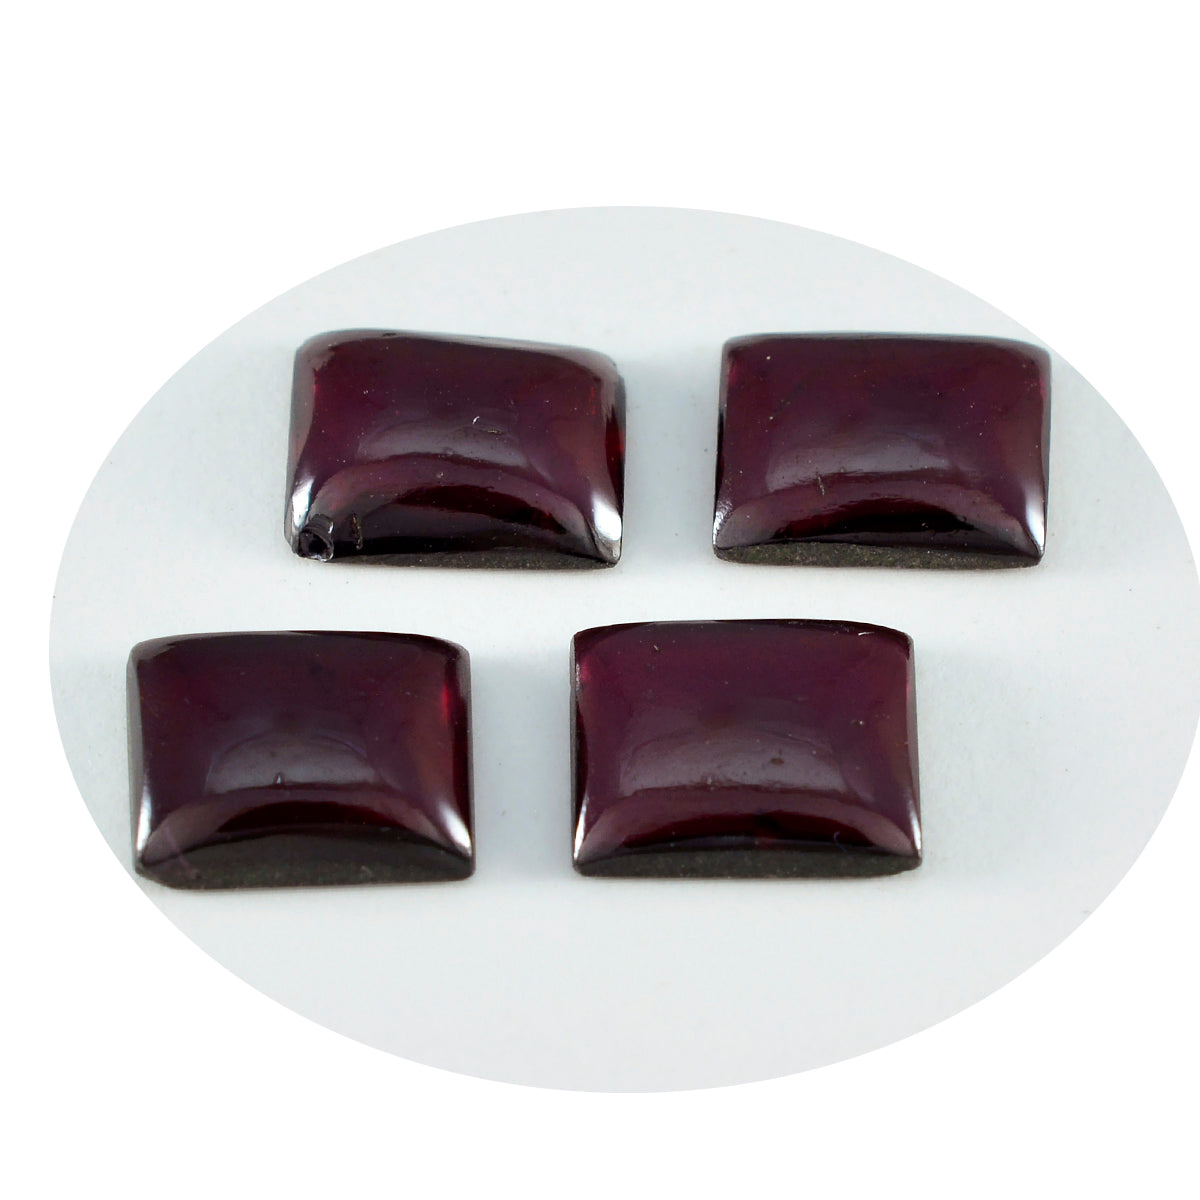 Riyogems 1PC Red Garnet Cabochon 10x12 mm Octagon Shape awesome Quality Loose Gemstone